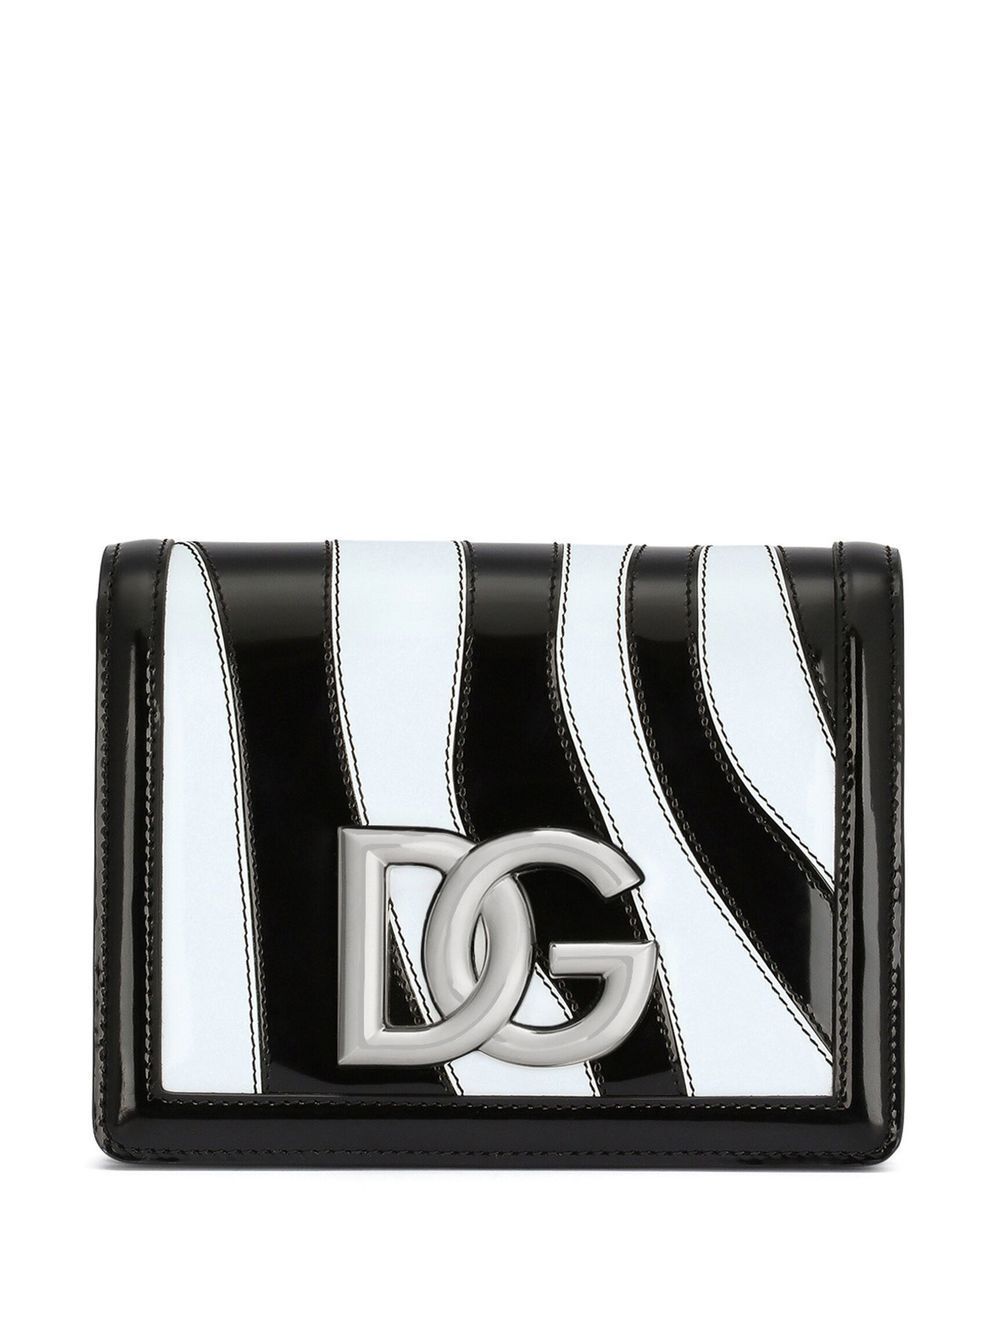 Dolce & Gabbana 3.5 zebra print crossbody bag - Black